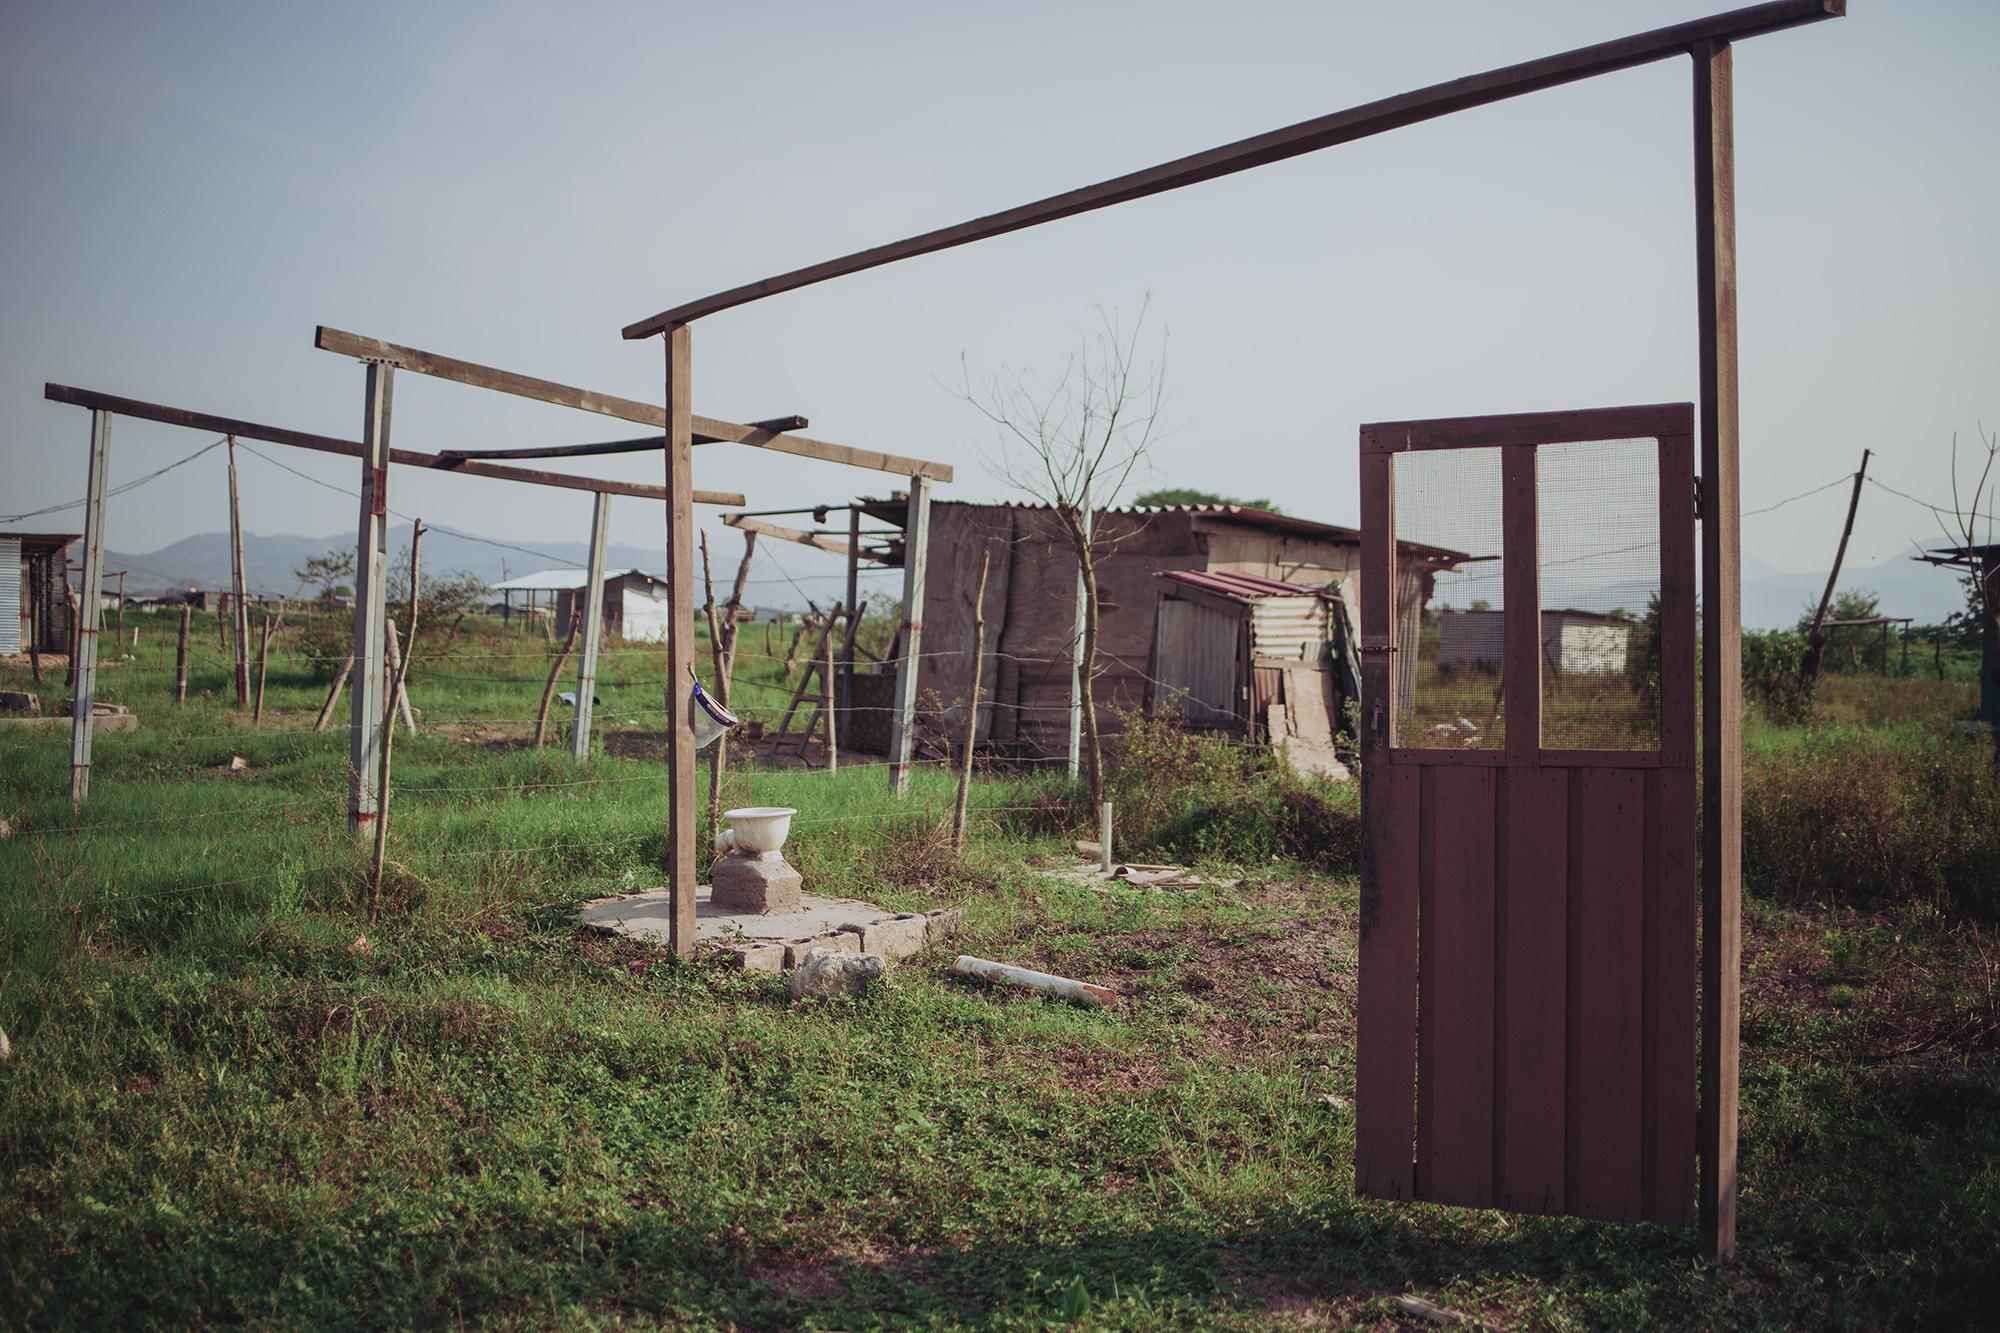 Algunas familias no han podido regresar a la comunidad, la falta de trabajo para comprar materiales de construcción impide que algunas viviendas sean reconstruidas después de la devastación causada por los huracanes Eta y Iota en noviembre de 2020.